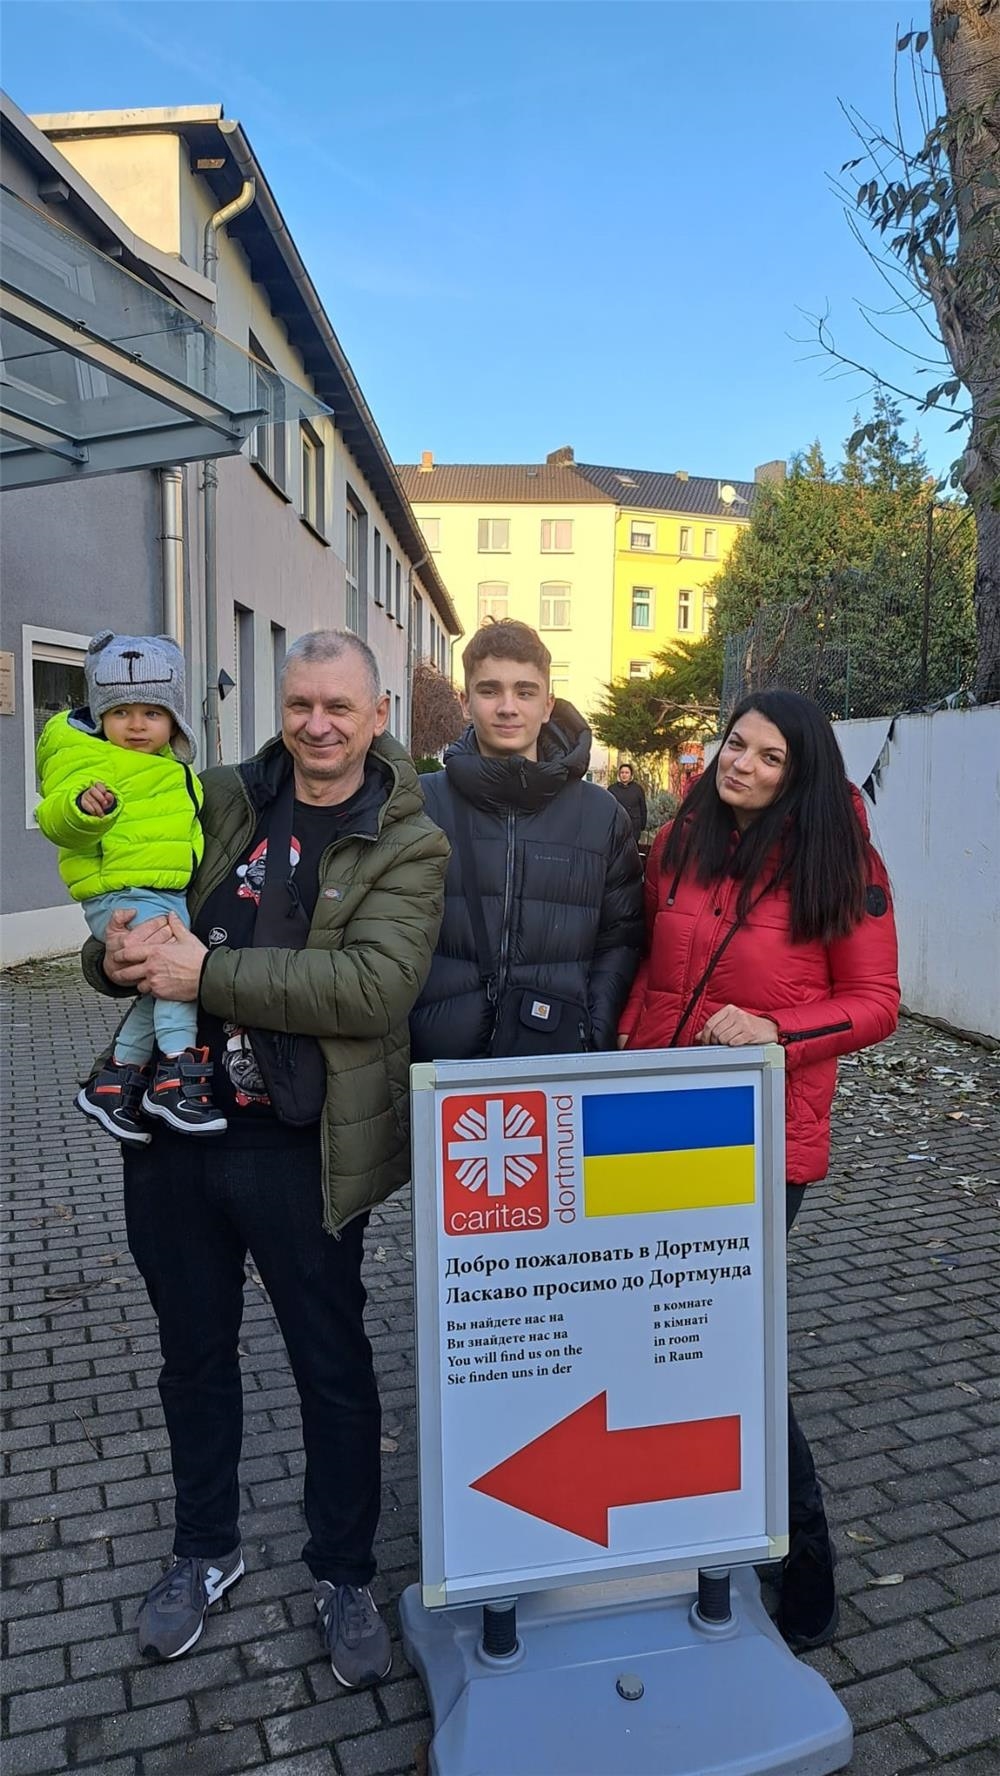 Ein Mann mit einem Kleinkind auf dem Arm, ein Jugendlicher und eine Frau stehen vor dem Wegweiser zur Anblaufstelle der Ukrainehilfe